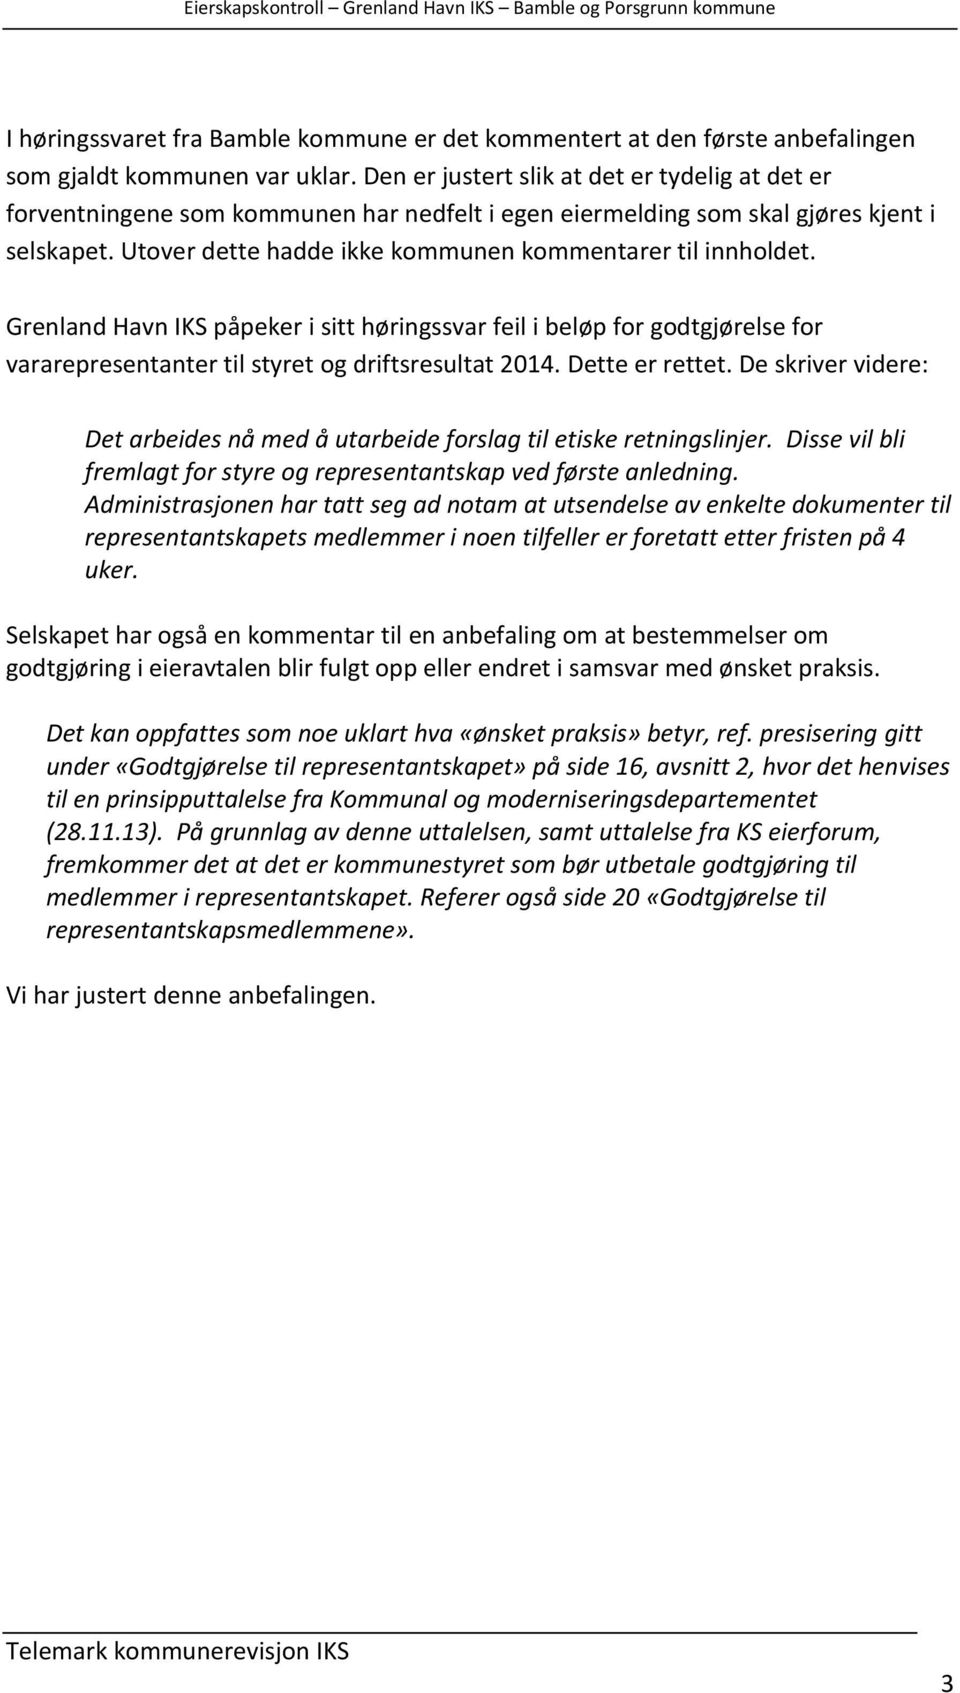 Utover dette hadde ikke kommunen kommentarer til innholdet. Grenland Havn IKS påpeker i sitt høringssvar feil i beløp for godtgjørelse for vararepresentanter til styret og driftsresultat 2014.